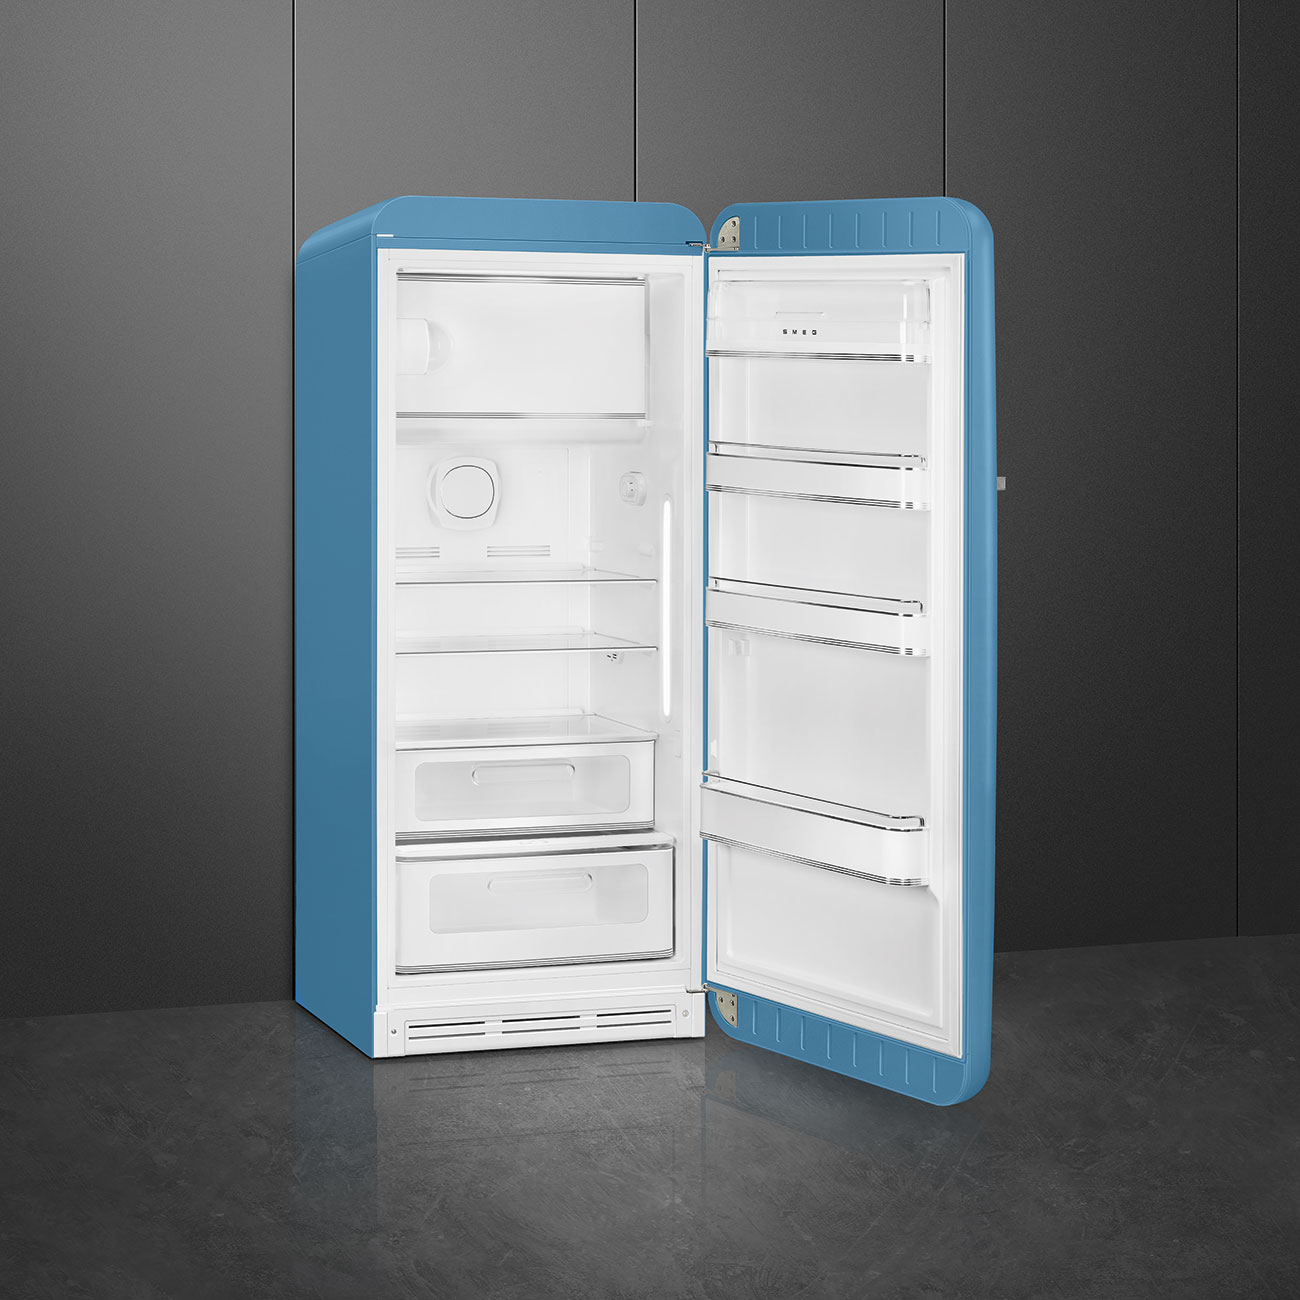 Light Blue refrigerator - Smeg_2